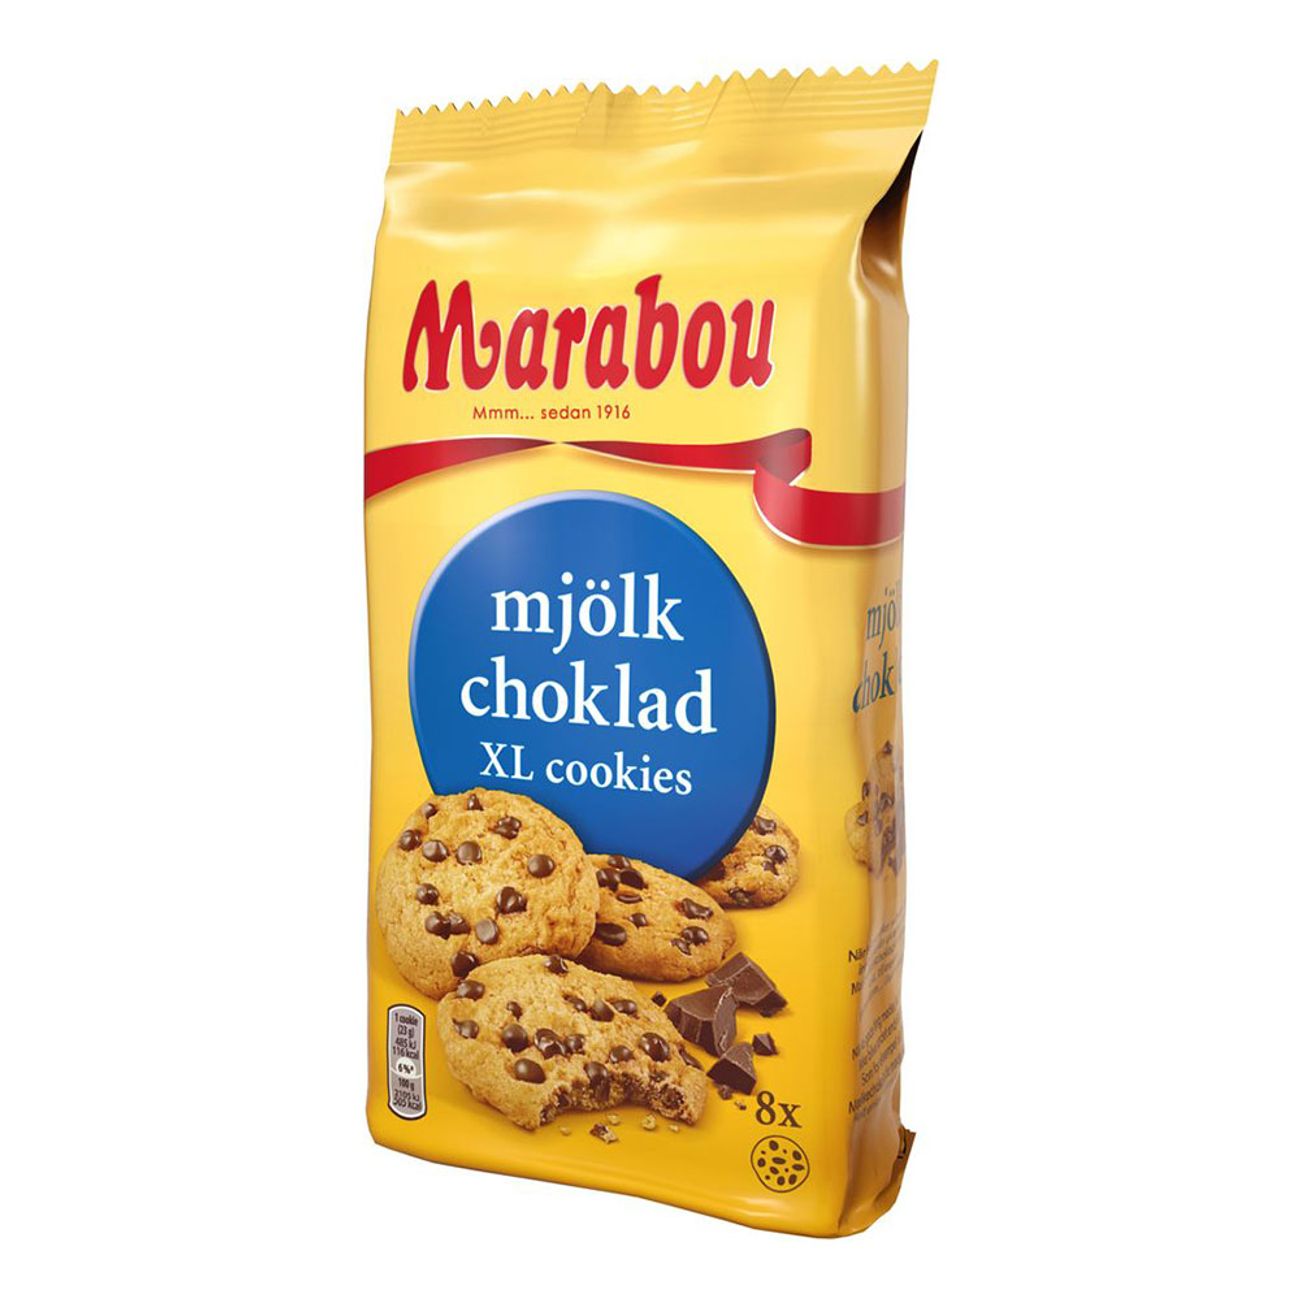 marabou-xl-cookies-mjolkchoklad-81123-1